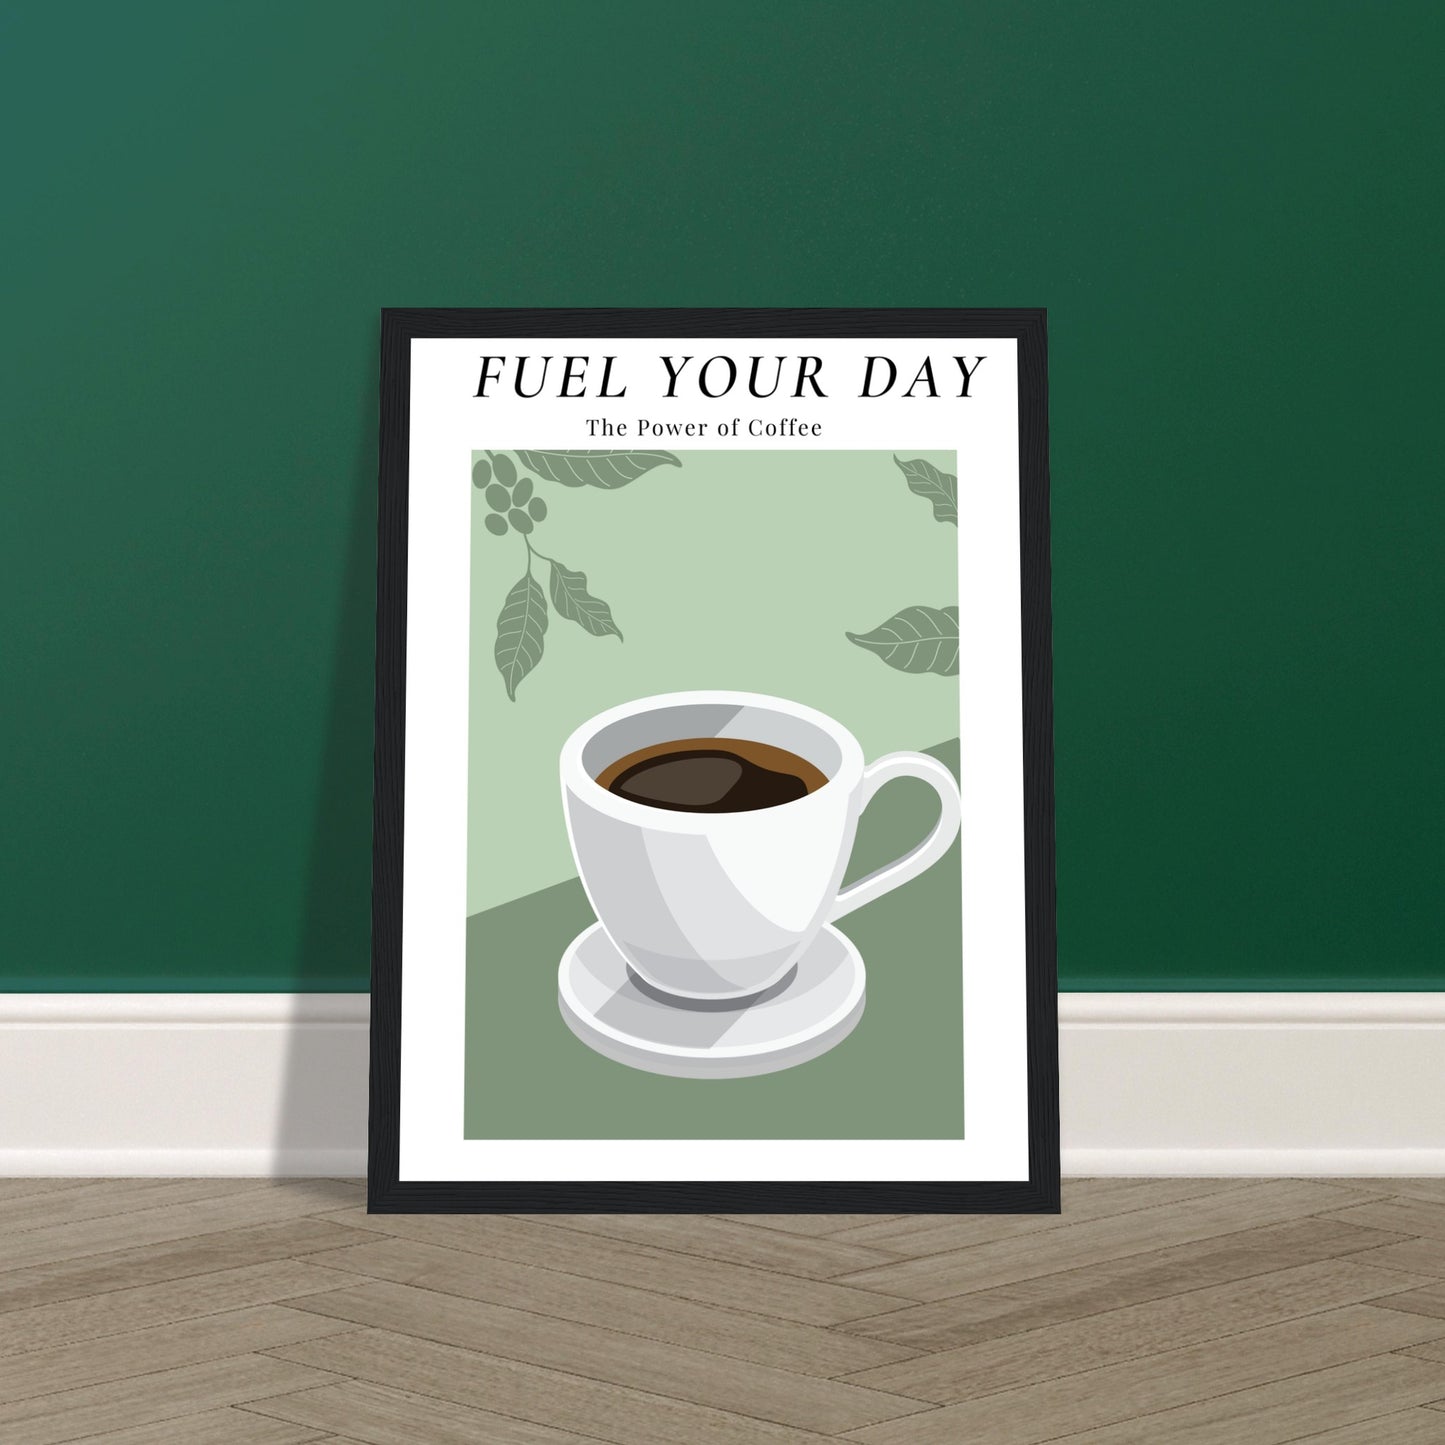 Ein Bild im Schwarzen Rahmen mit einer Tasse Kaffee auf einem Grünfarbigen Hintergrund mit Arabica Blätter als Akzente. Oben mittig des Bildes steht: "FUEL YOUR DAY" mit der Unterschrift "The Power of Coffee" dass auf dem Boden steht und an der Wand Lehnt.